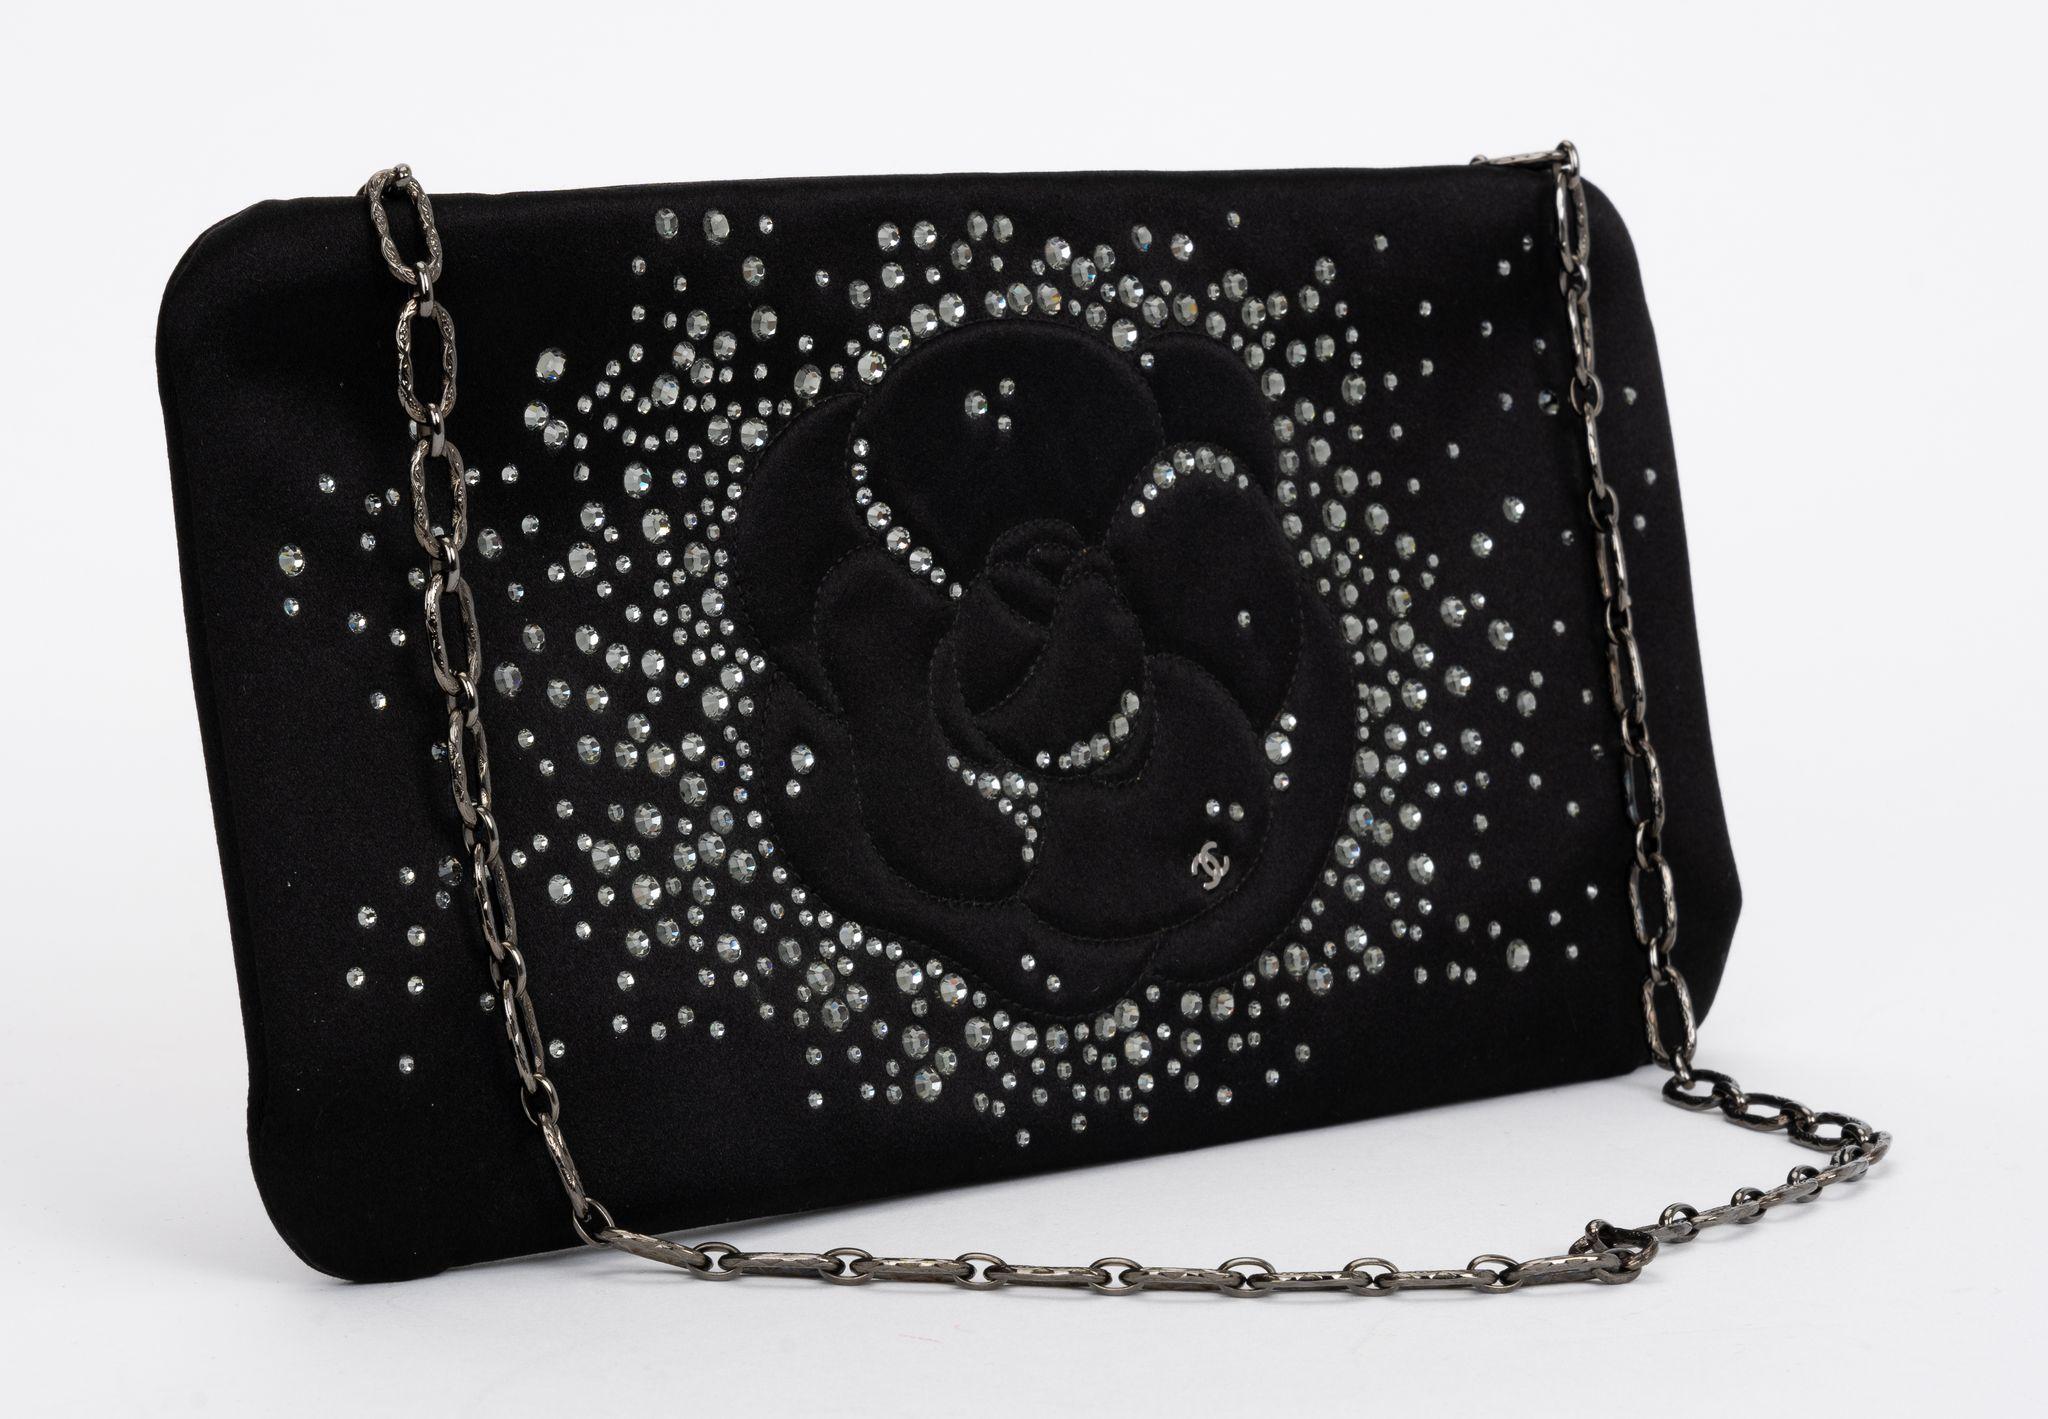 Pochette noire Chanel de la Collection Printemps/Été 2010 
de Karl Lagerfeld. Comprend des accessoires de couleur argentée et une bandoulière à maillons de chaîne.
et des ornements en cristal. Doublure en satin et poche intérieure